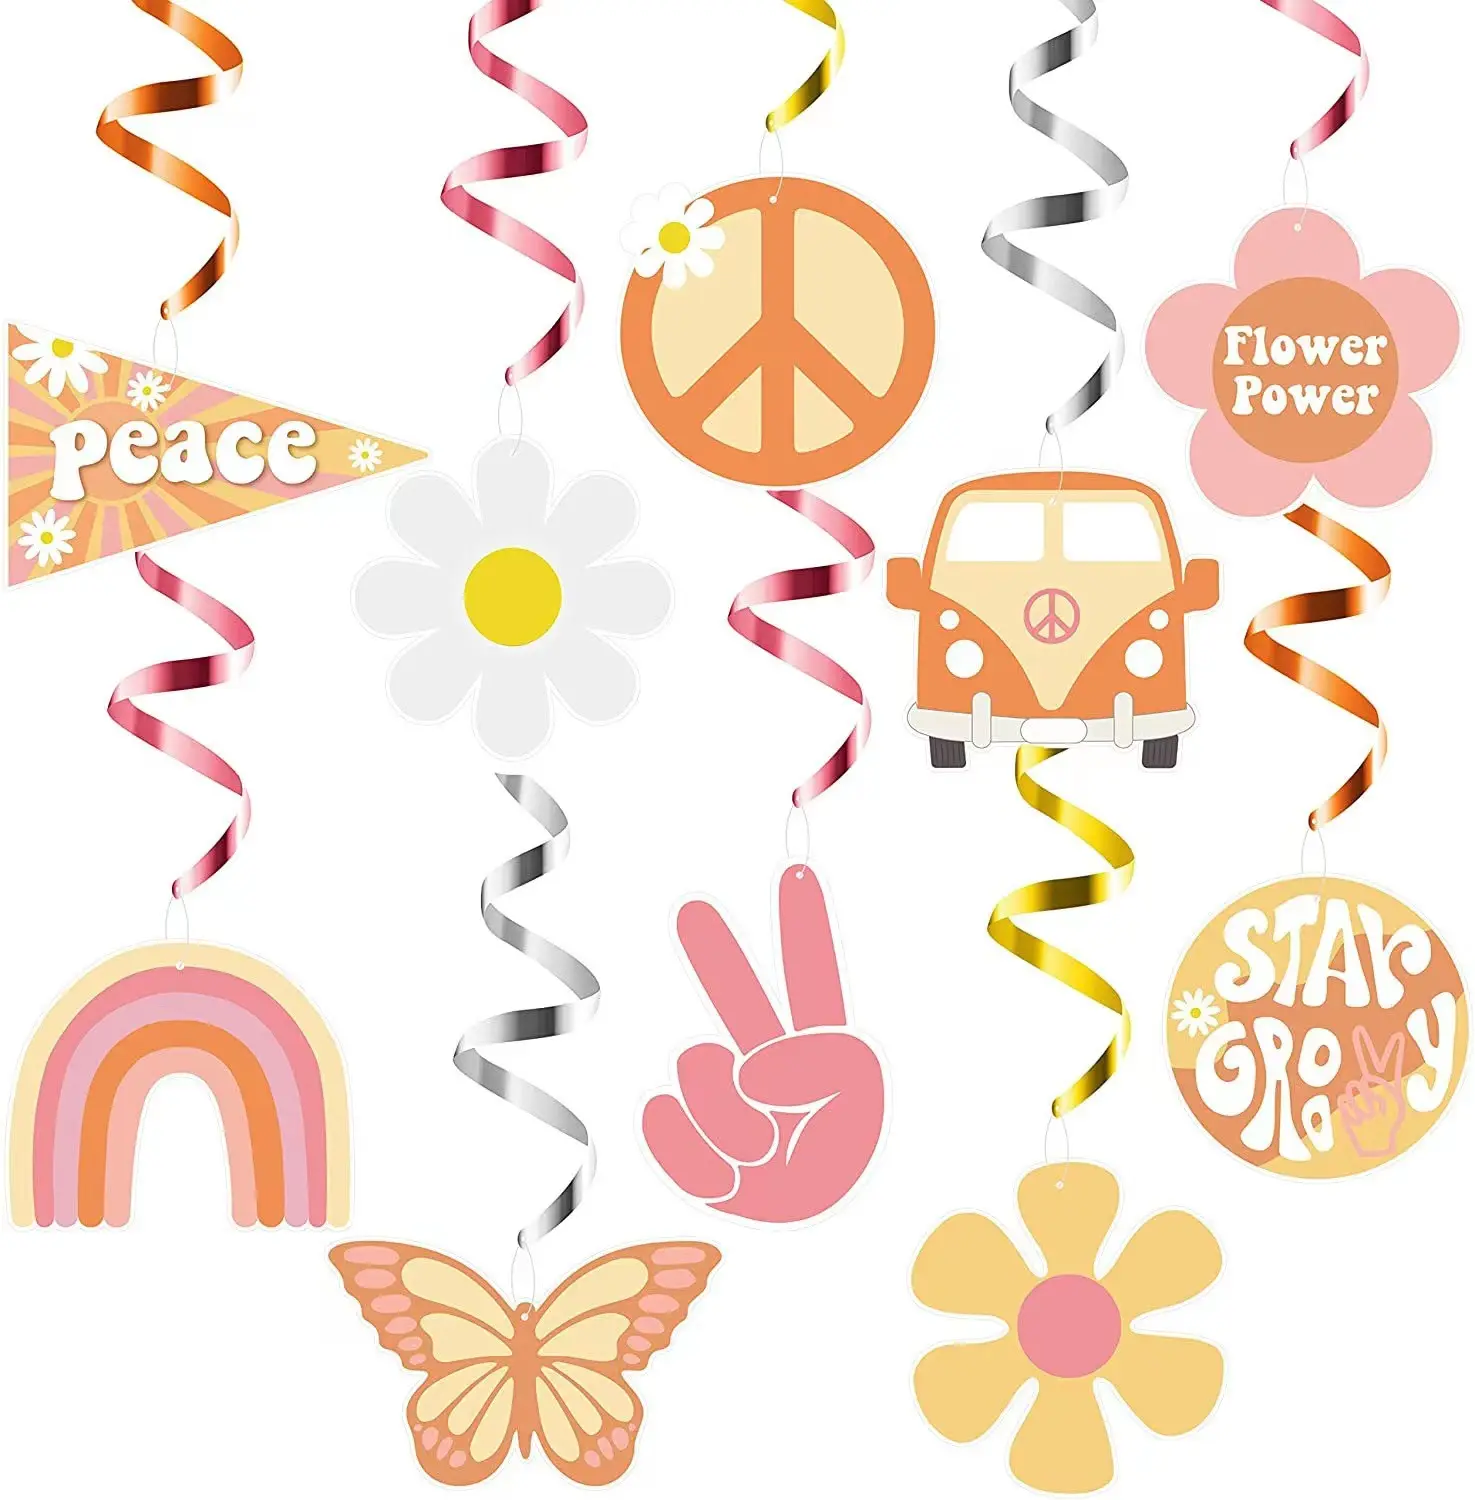 Ychon-colgante en espiral de PVC para fiesta, palo de arcoíris bohemio con temática hippie, dos ranuras y la paz